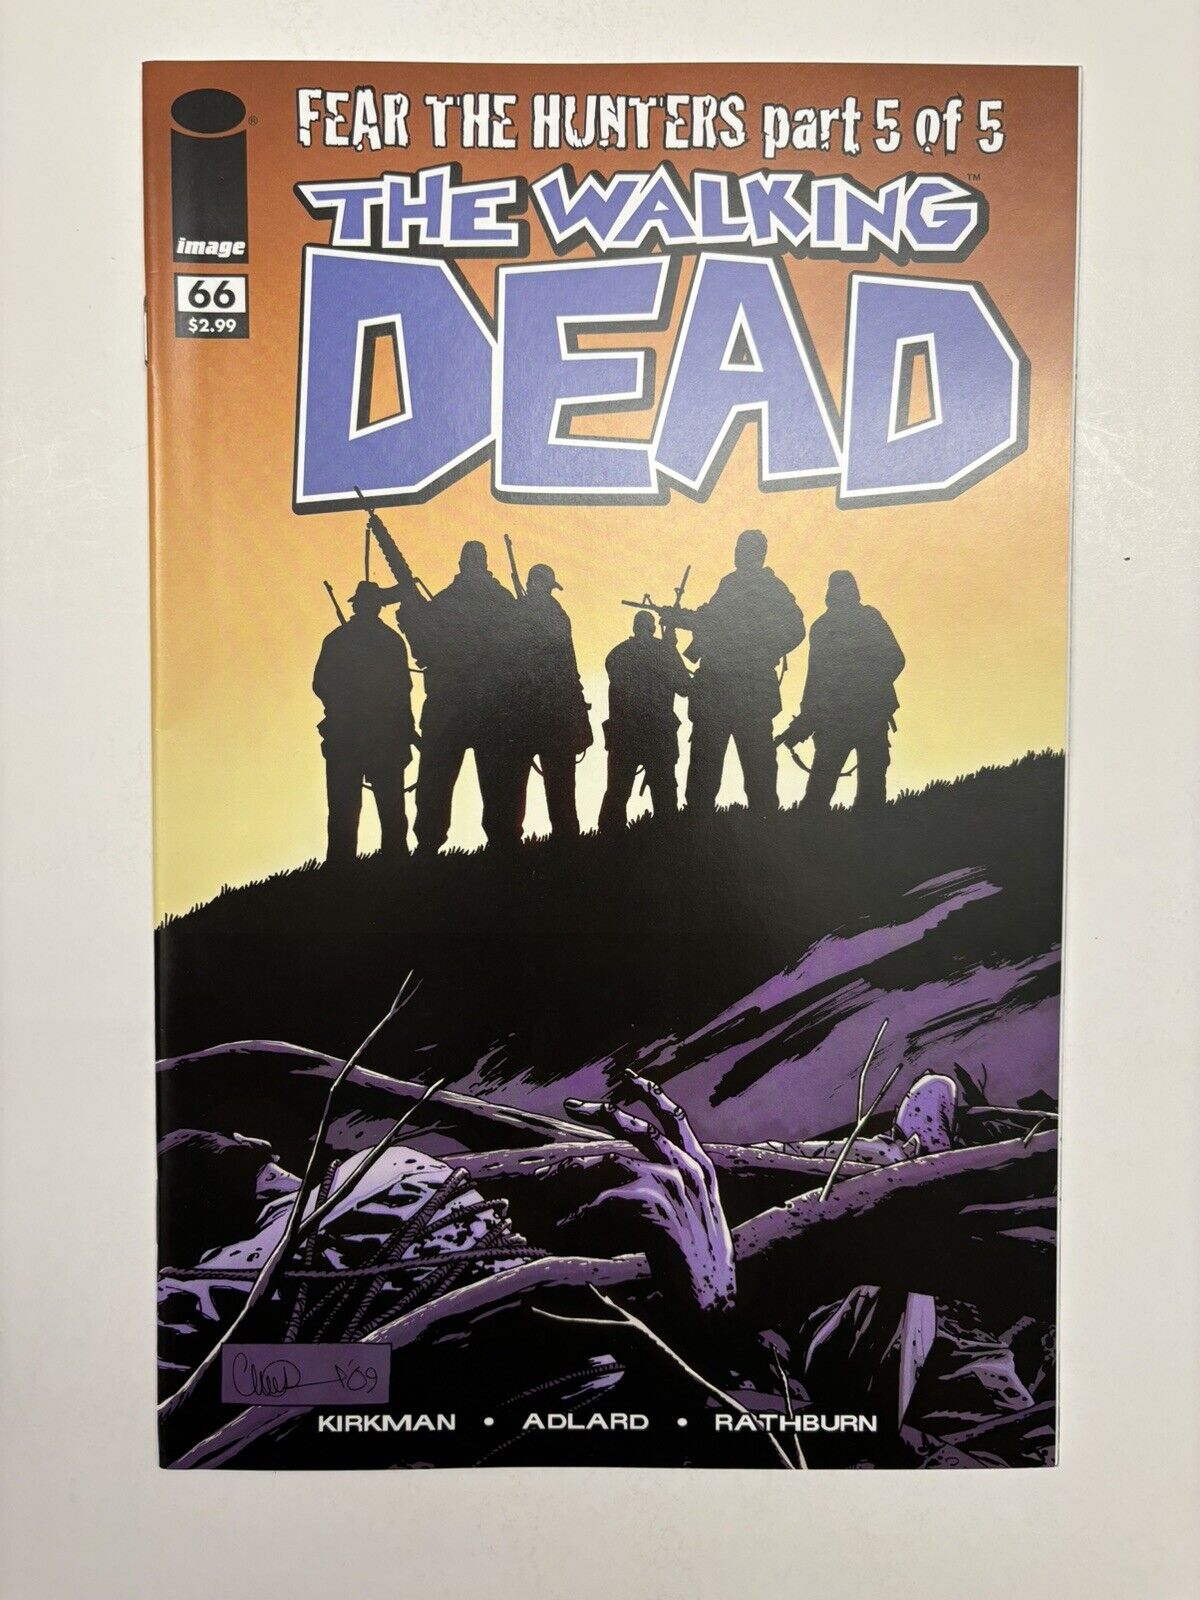 The Walking Dead #66 (Image 2009) - 1st app. Douglas Monroe - Death of Dale